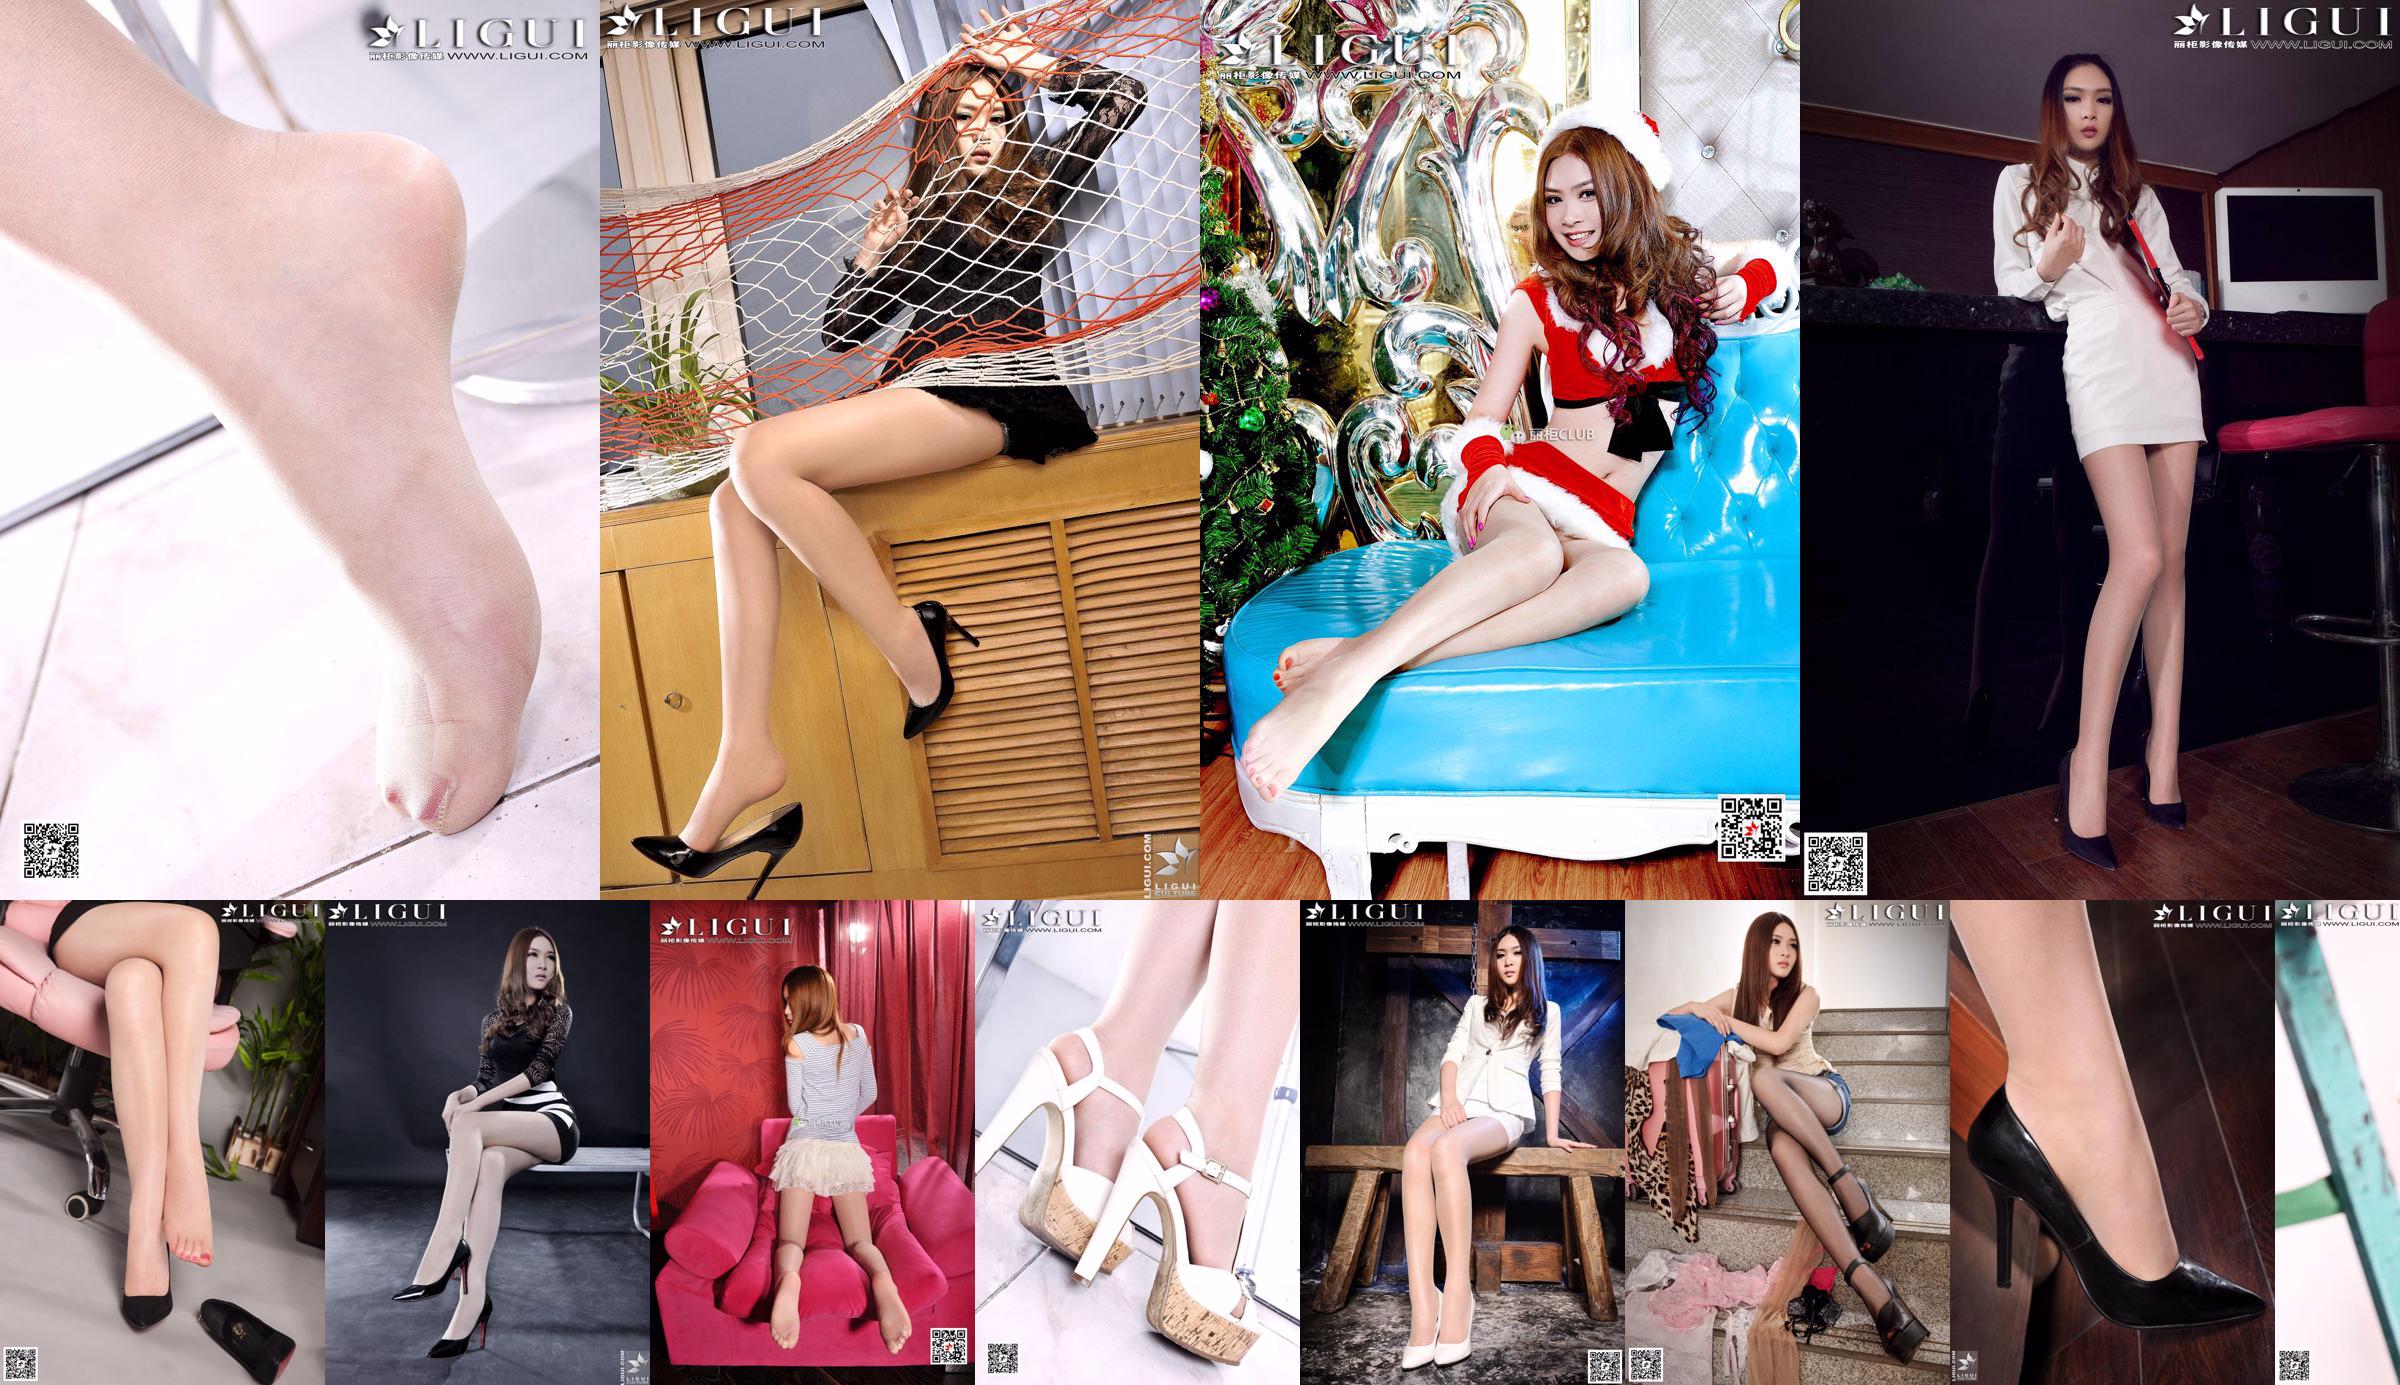 Người mẫu Yoona "Váy ngắn, Chân đẹp và Chân ngọc" [Ligui Ligui] No.a3e49f Trang 31